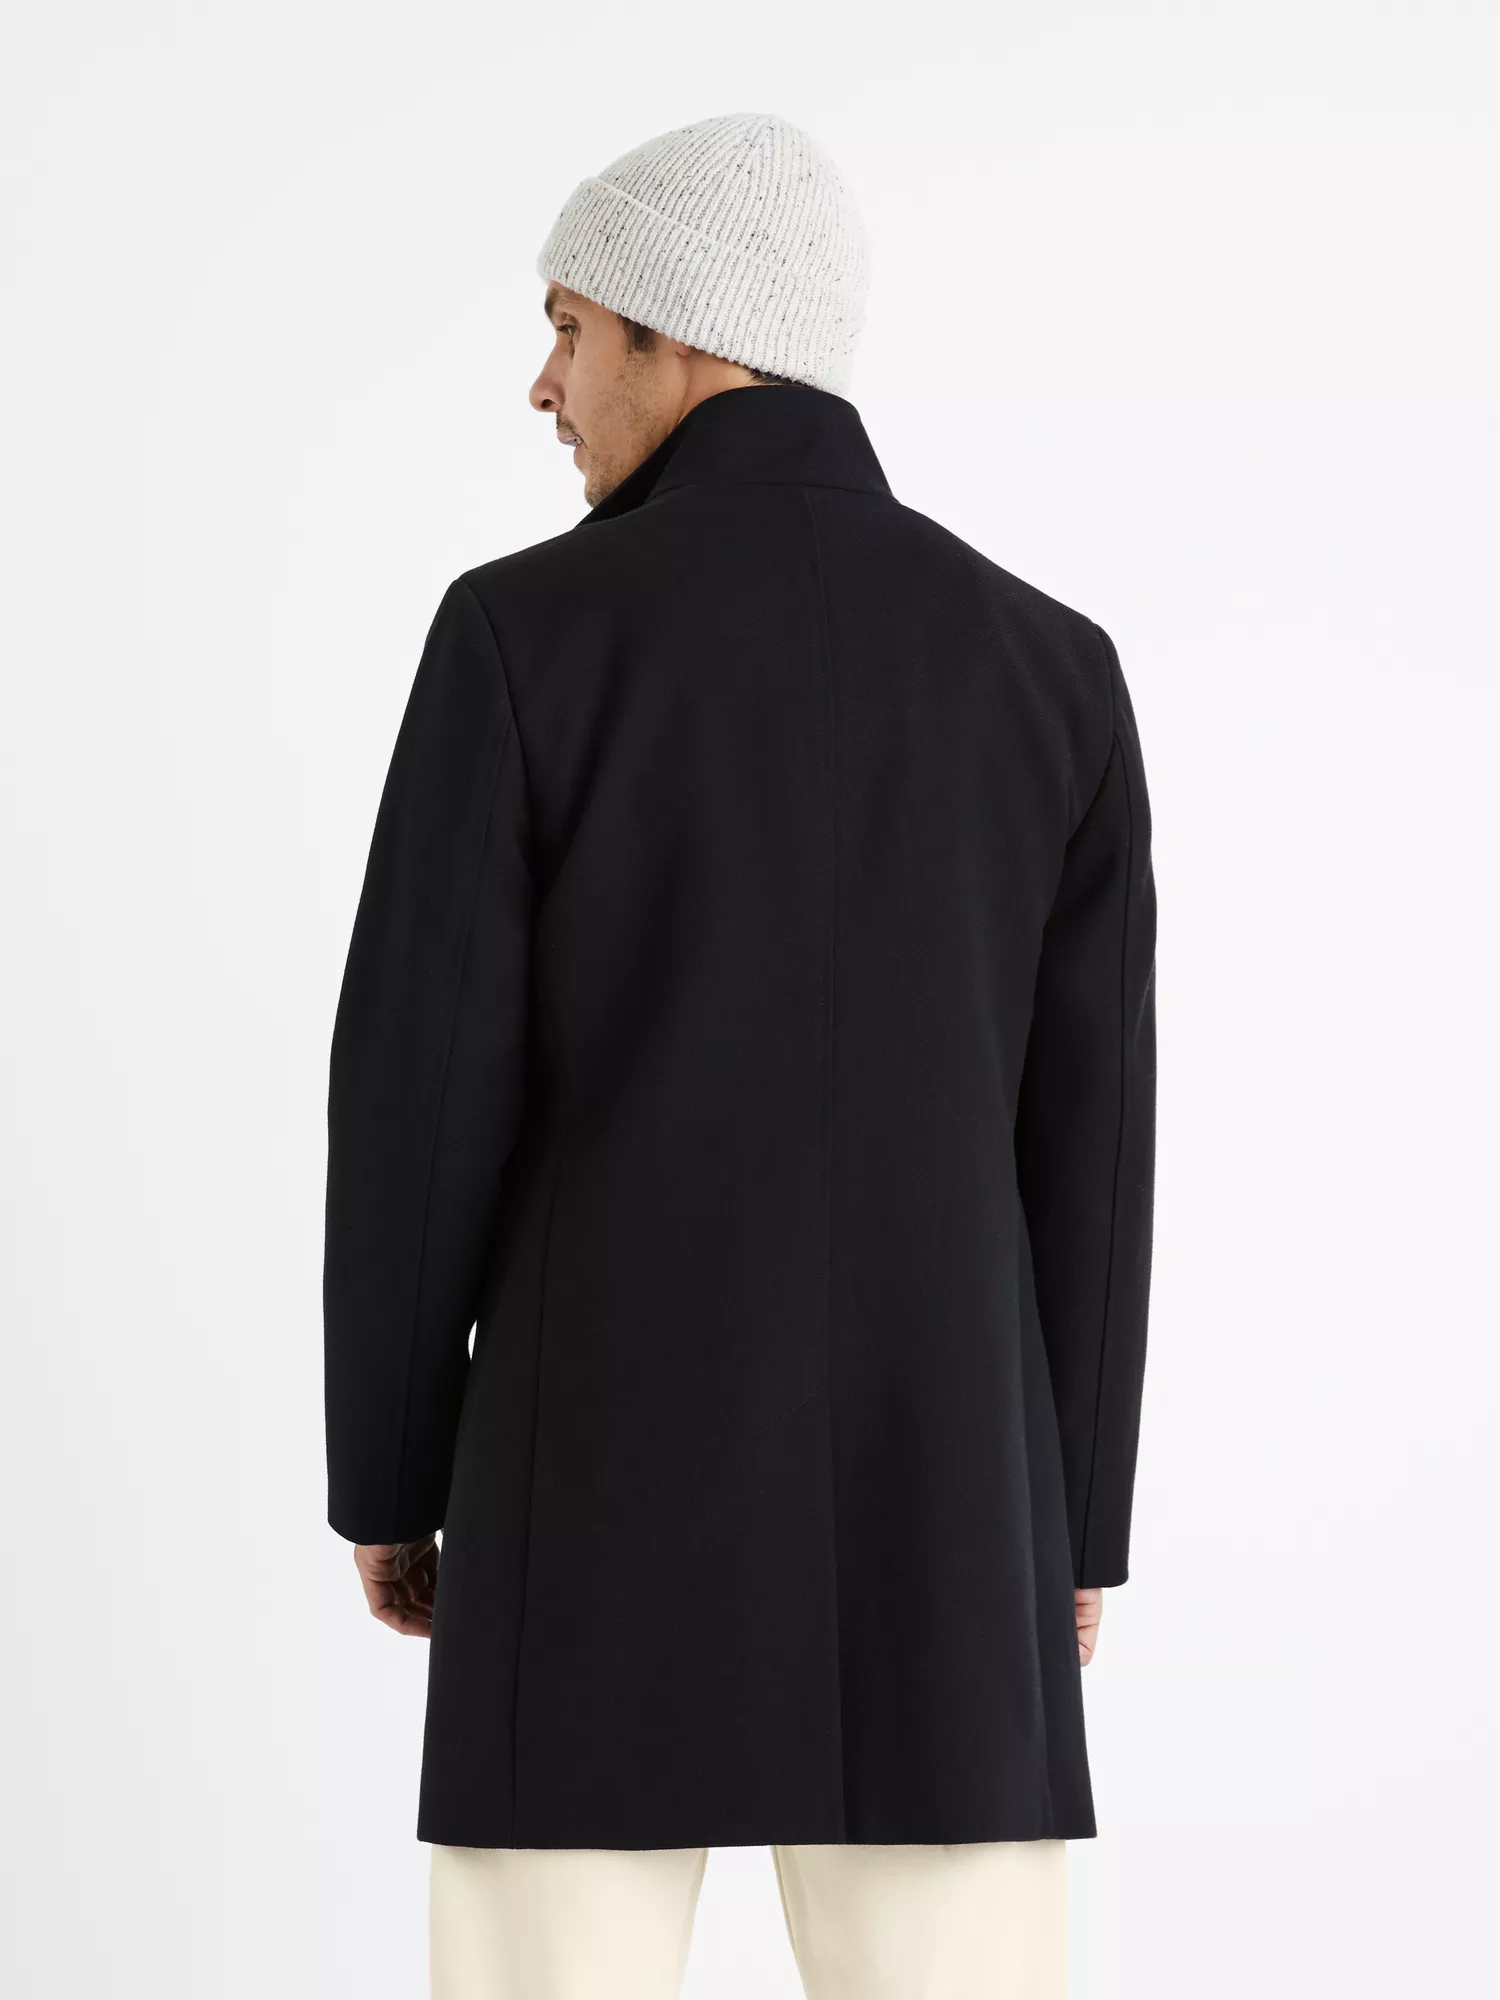 Elegantní kabát Puoffice s vlnou (5)